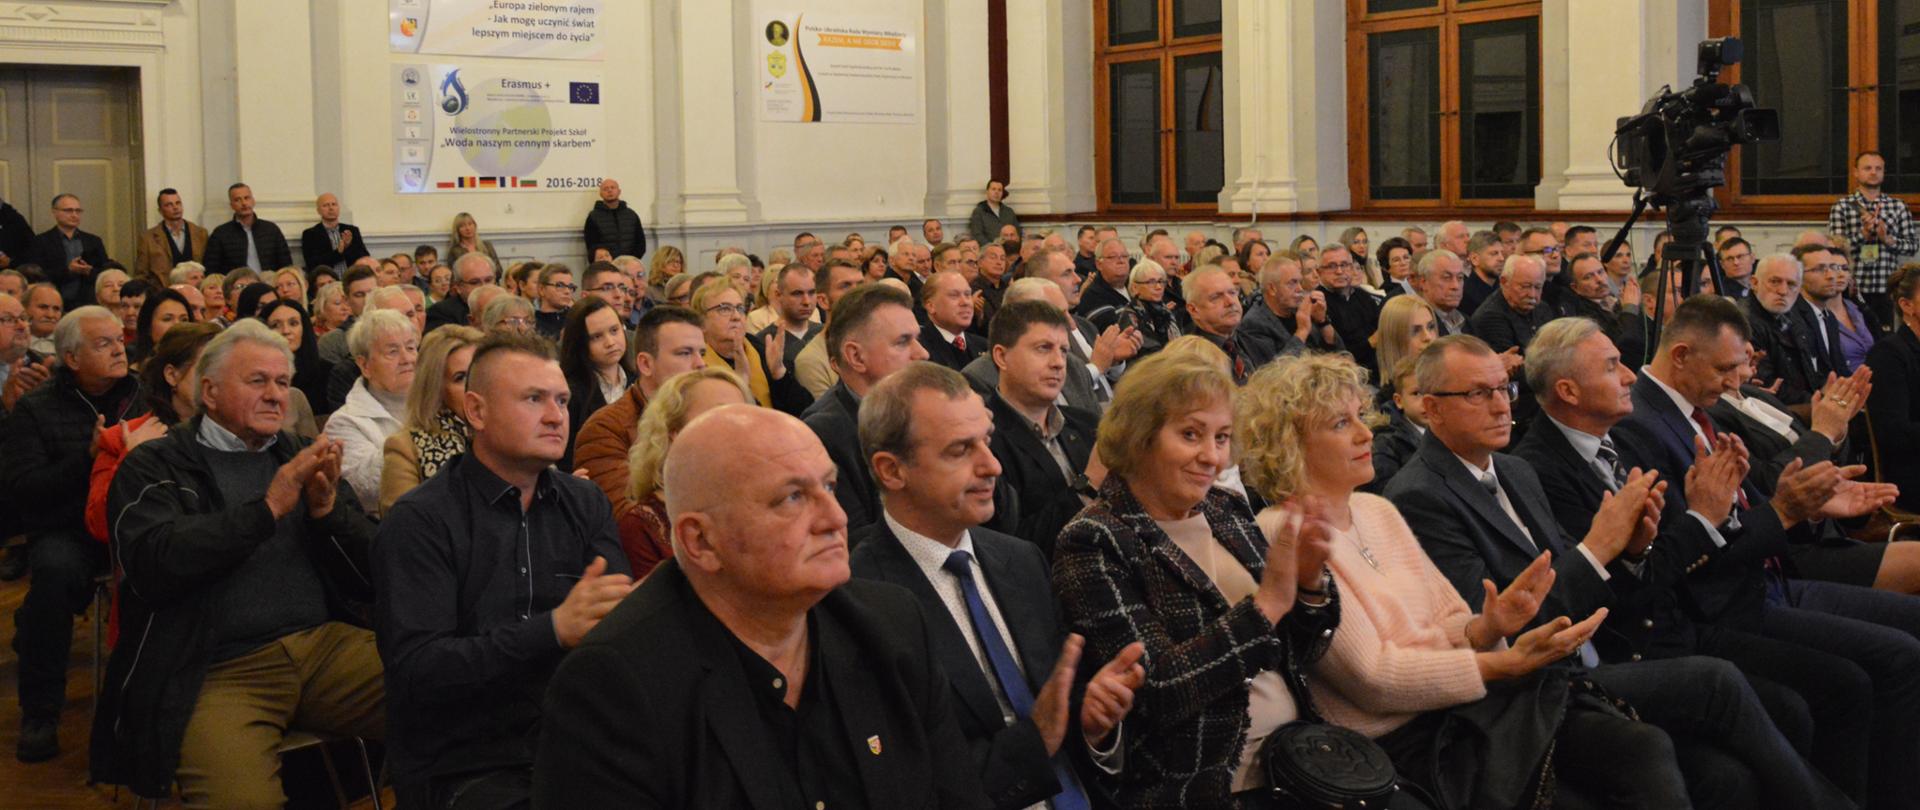 Mieszkańcy powiatu prudnickiego siedzą i klaszczą w dłonie podczas przemówienia ministra